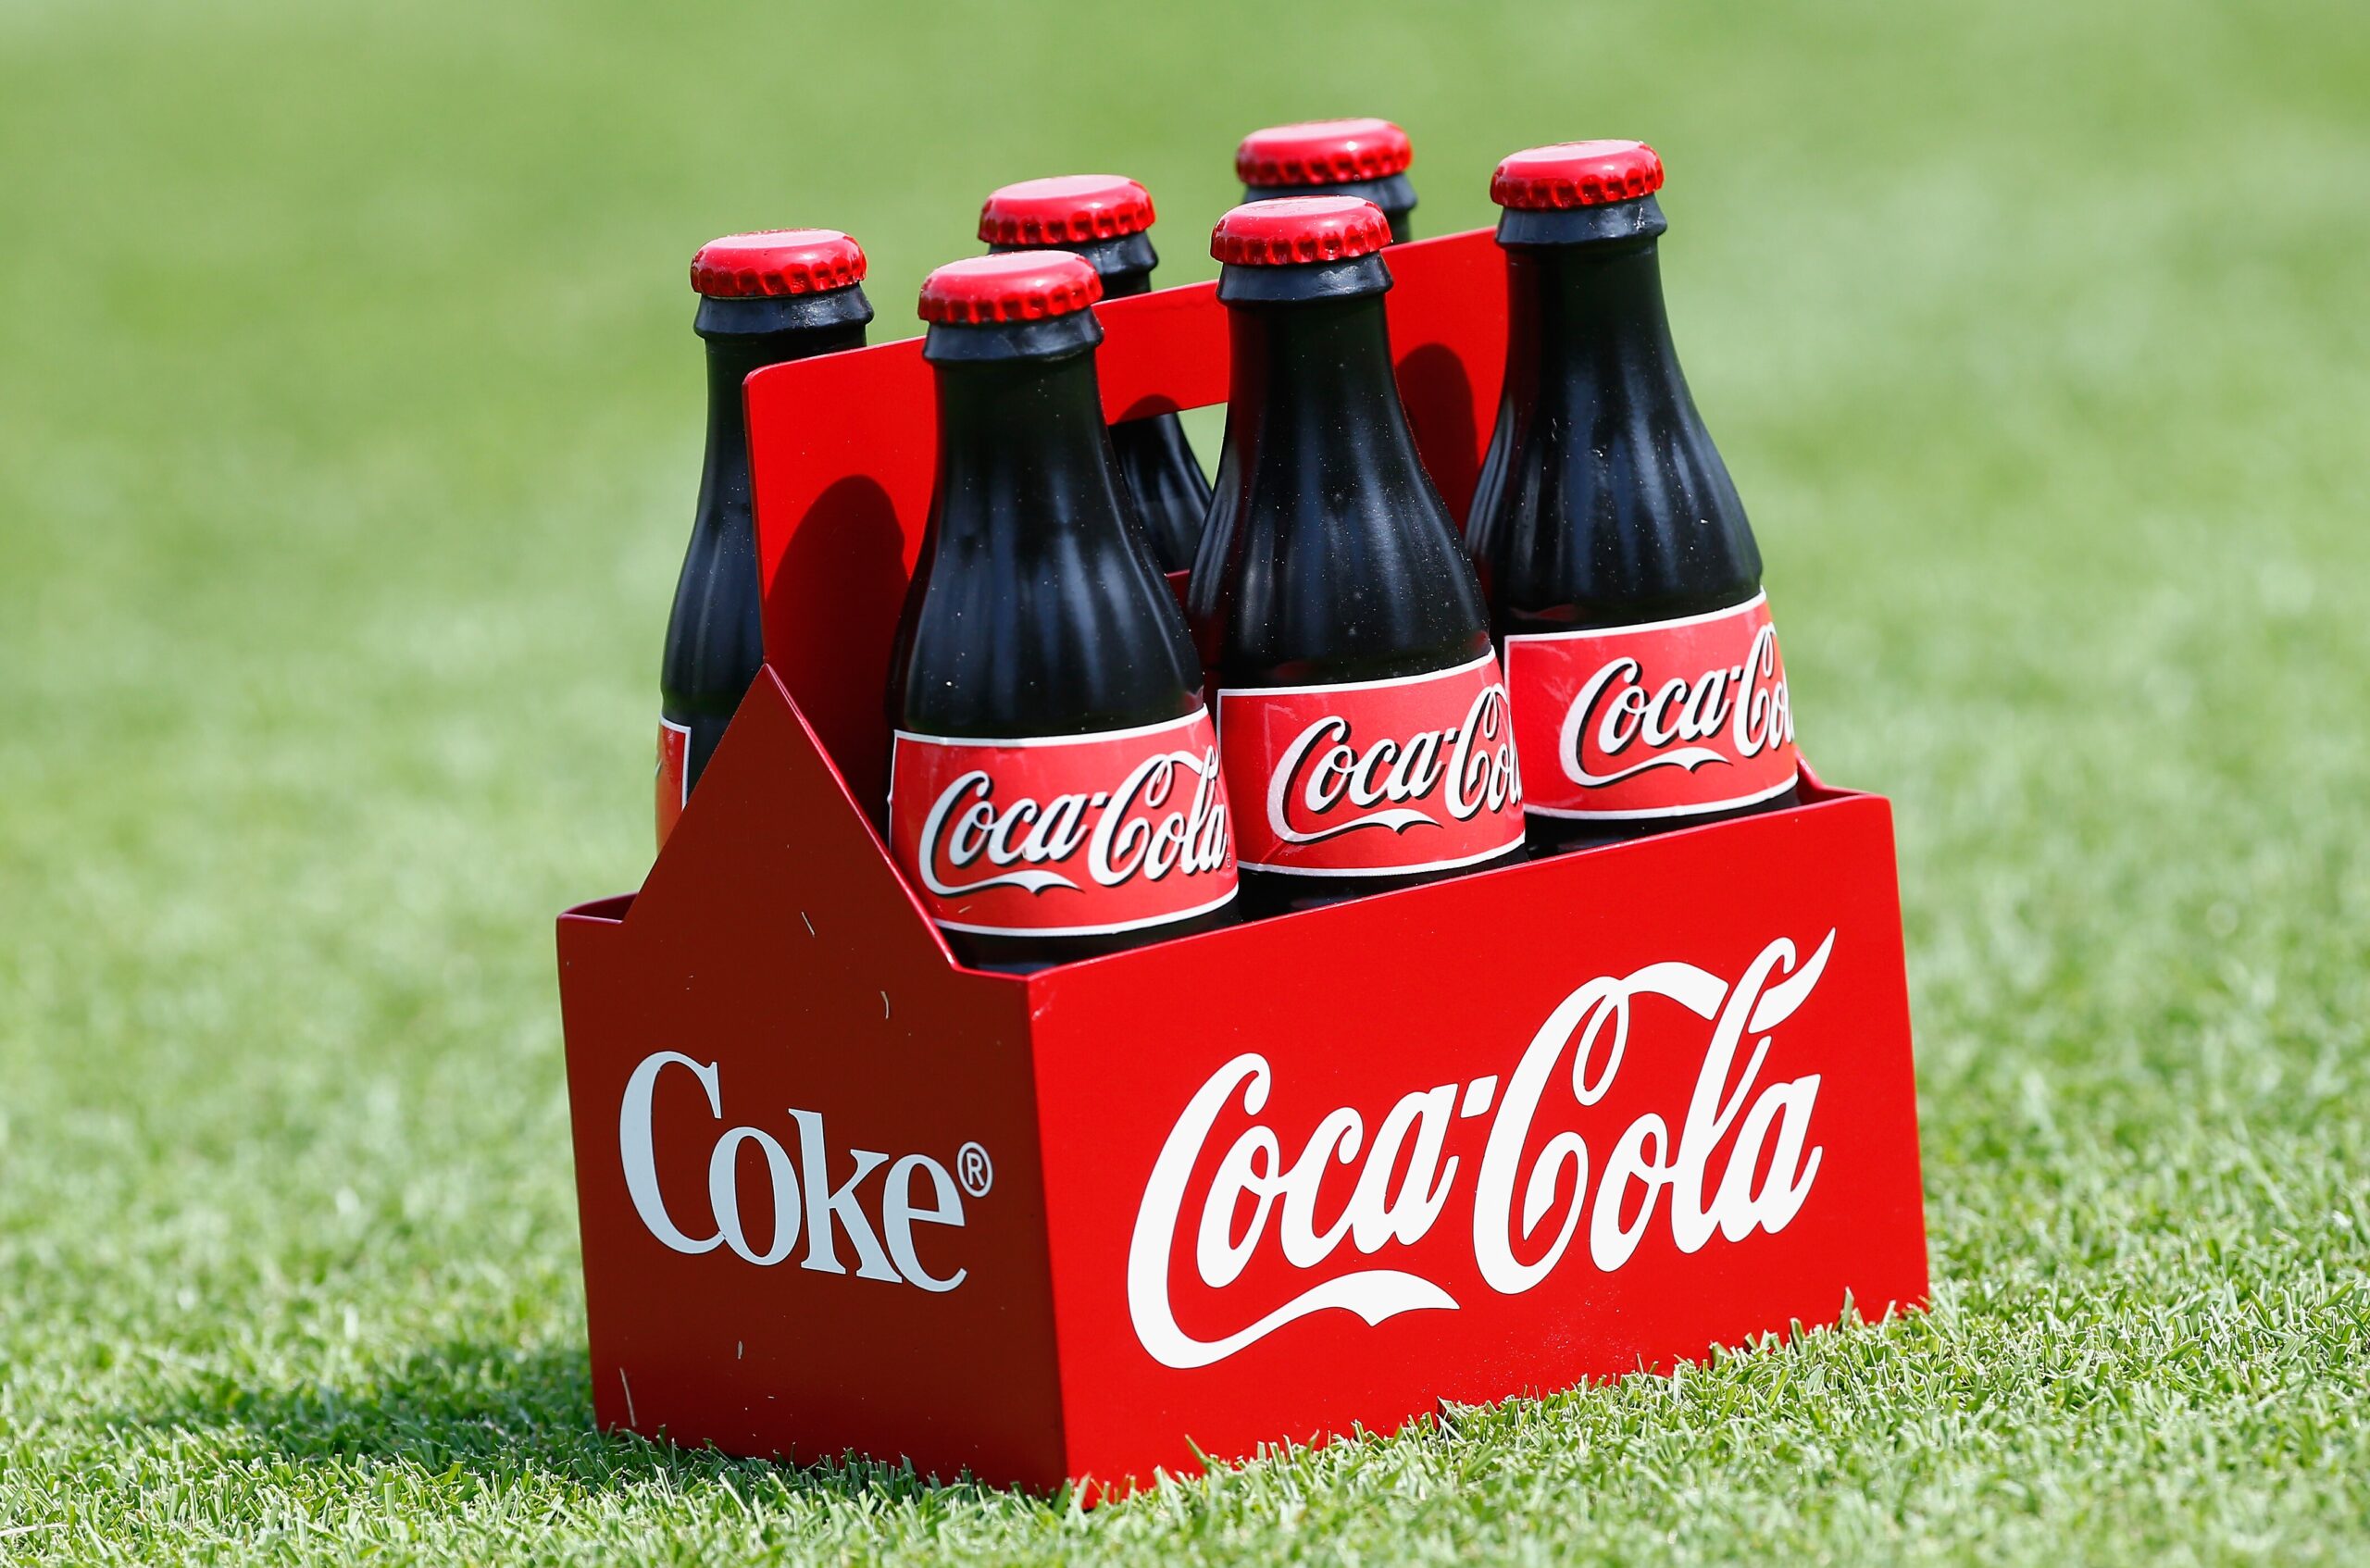 Coca Cola celebra sus 80 años y apuesta por los jóvenes emprendedores